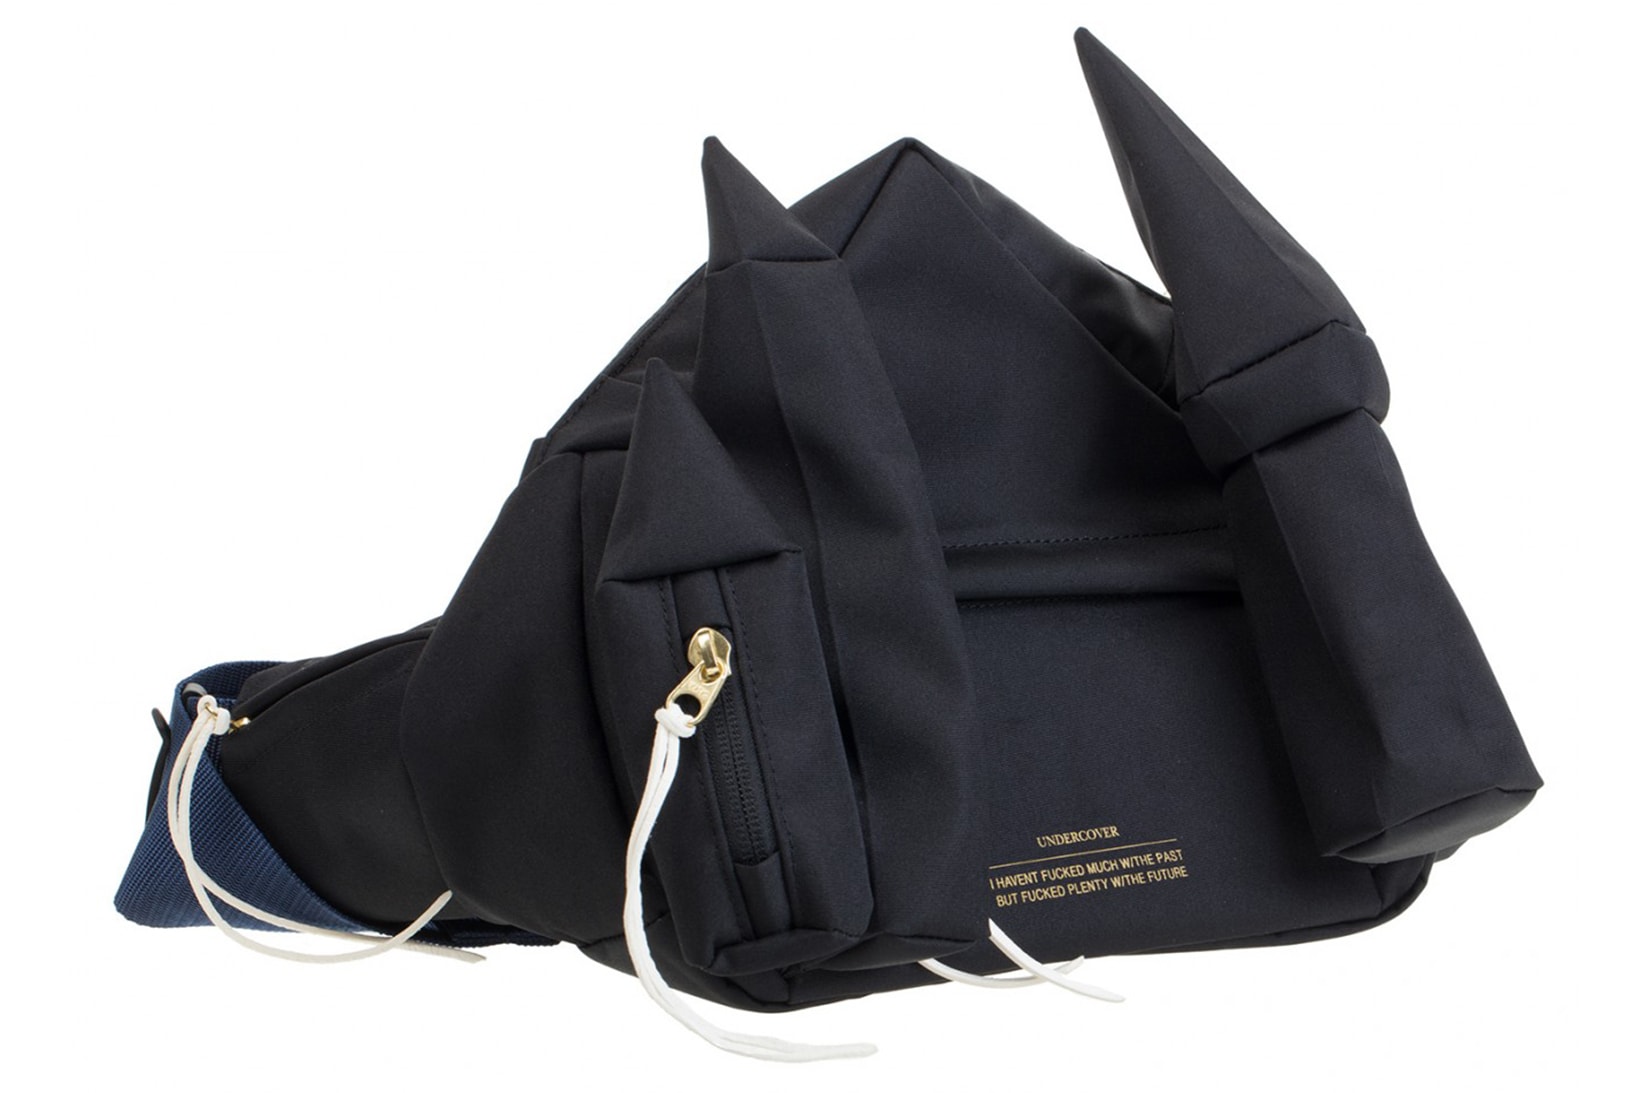 Undercover waist pack bum bag waist bag images black navy